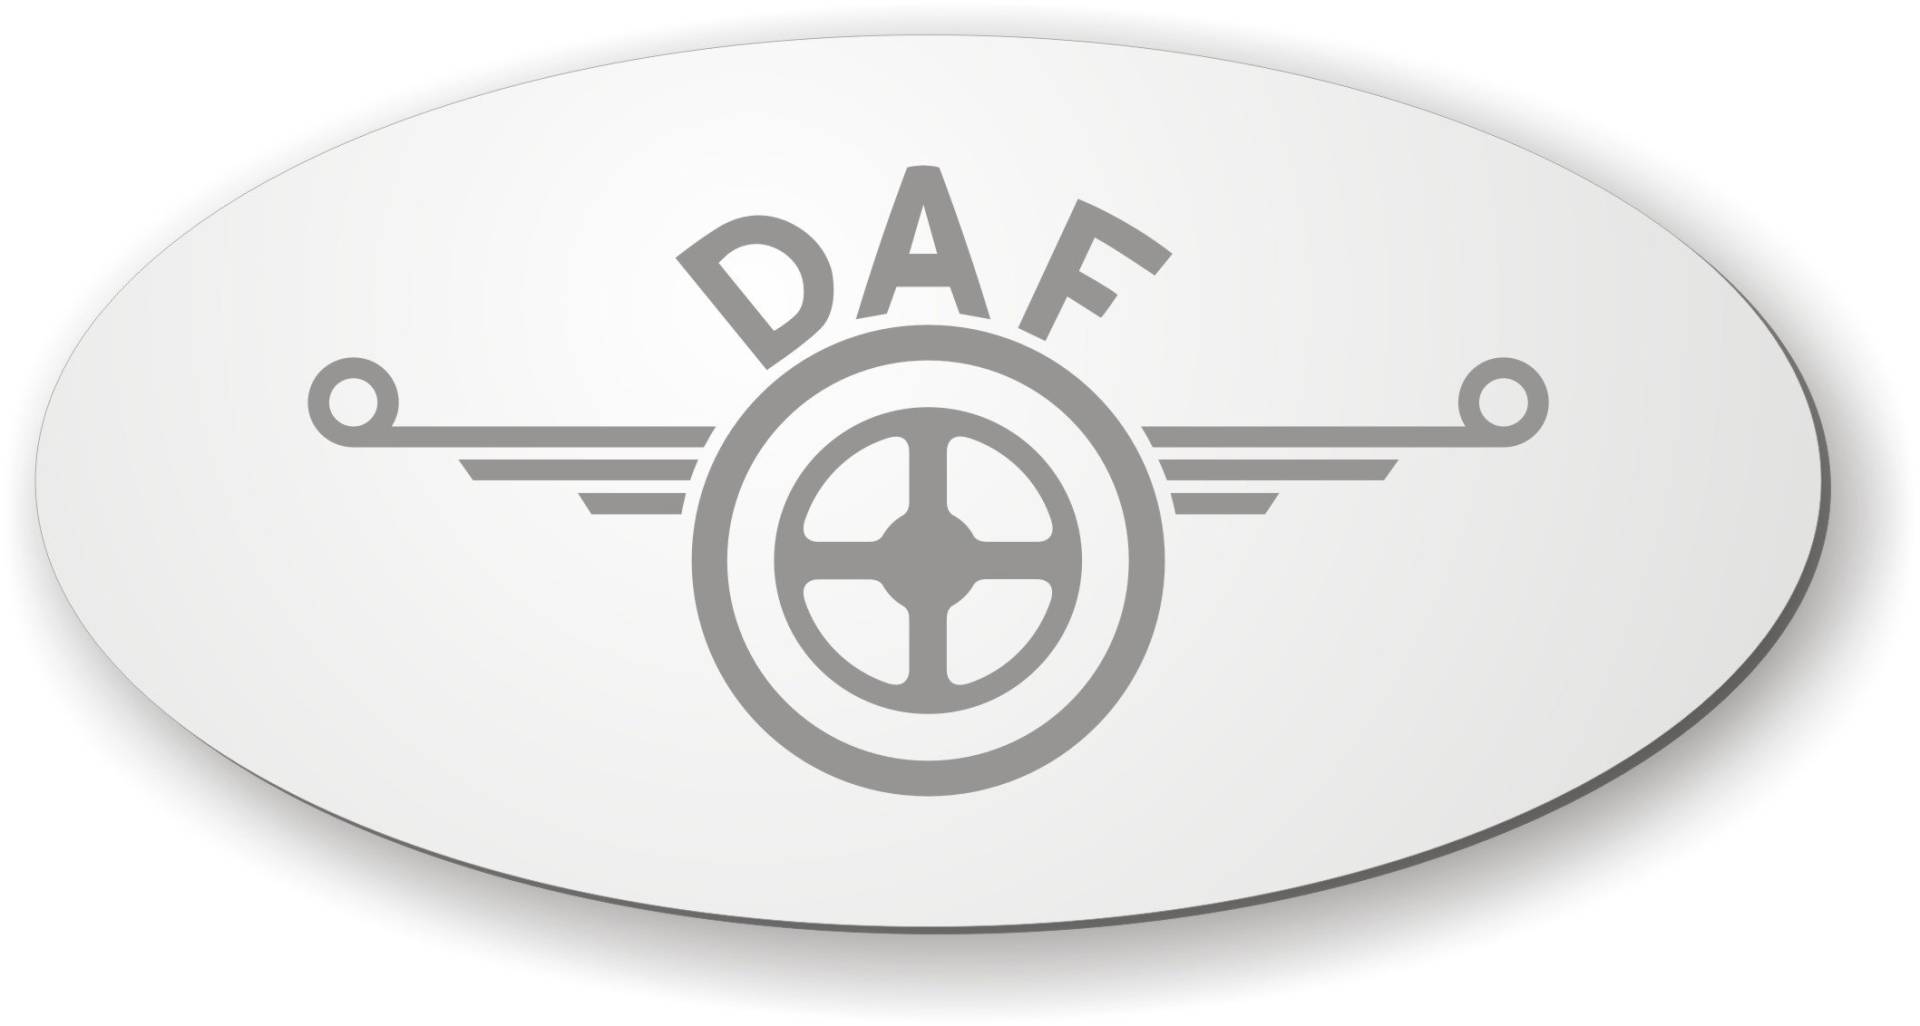 DAF Spiegel mit Logo für die Rückwand ✓ DAF Aufkleber ✓ LKW-Zubehör und Artikel für Innenausstattung ✓ Rückwandspiegel ✓ Truck accessoires für die Fahrerkabine ✓ von Schilderfeuerwehr